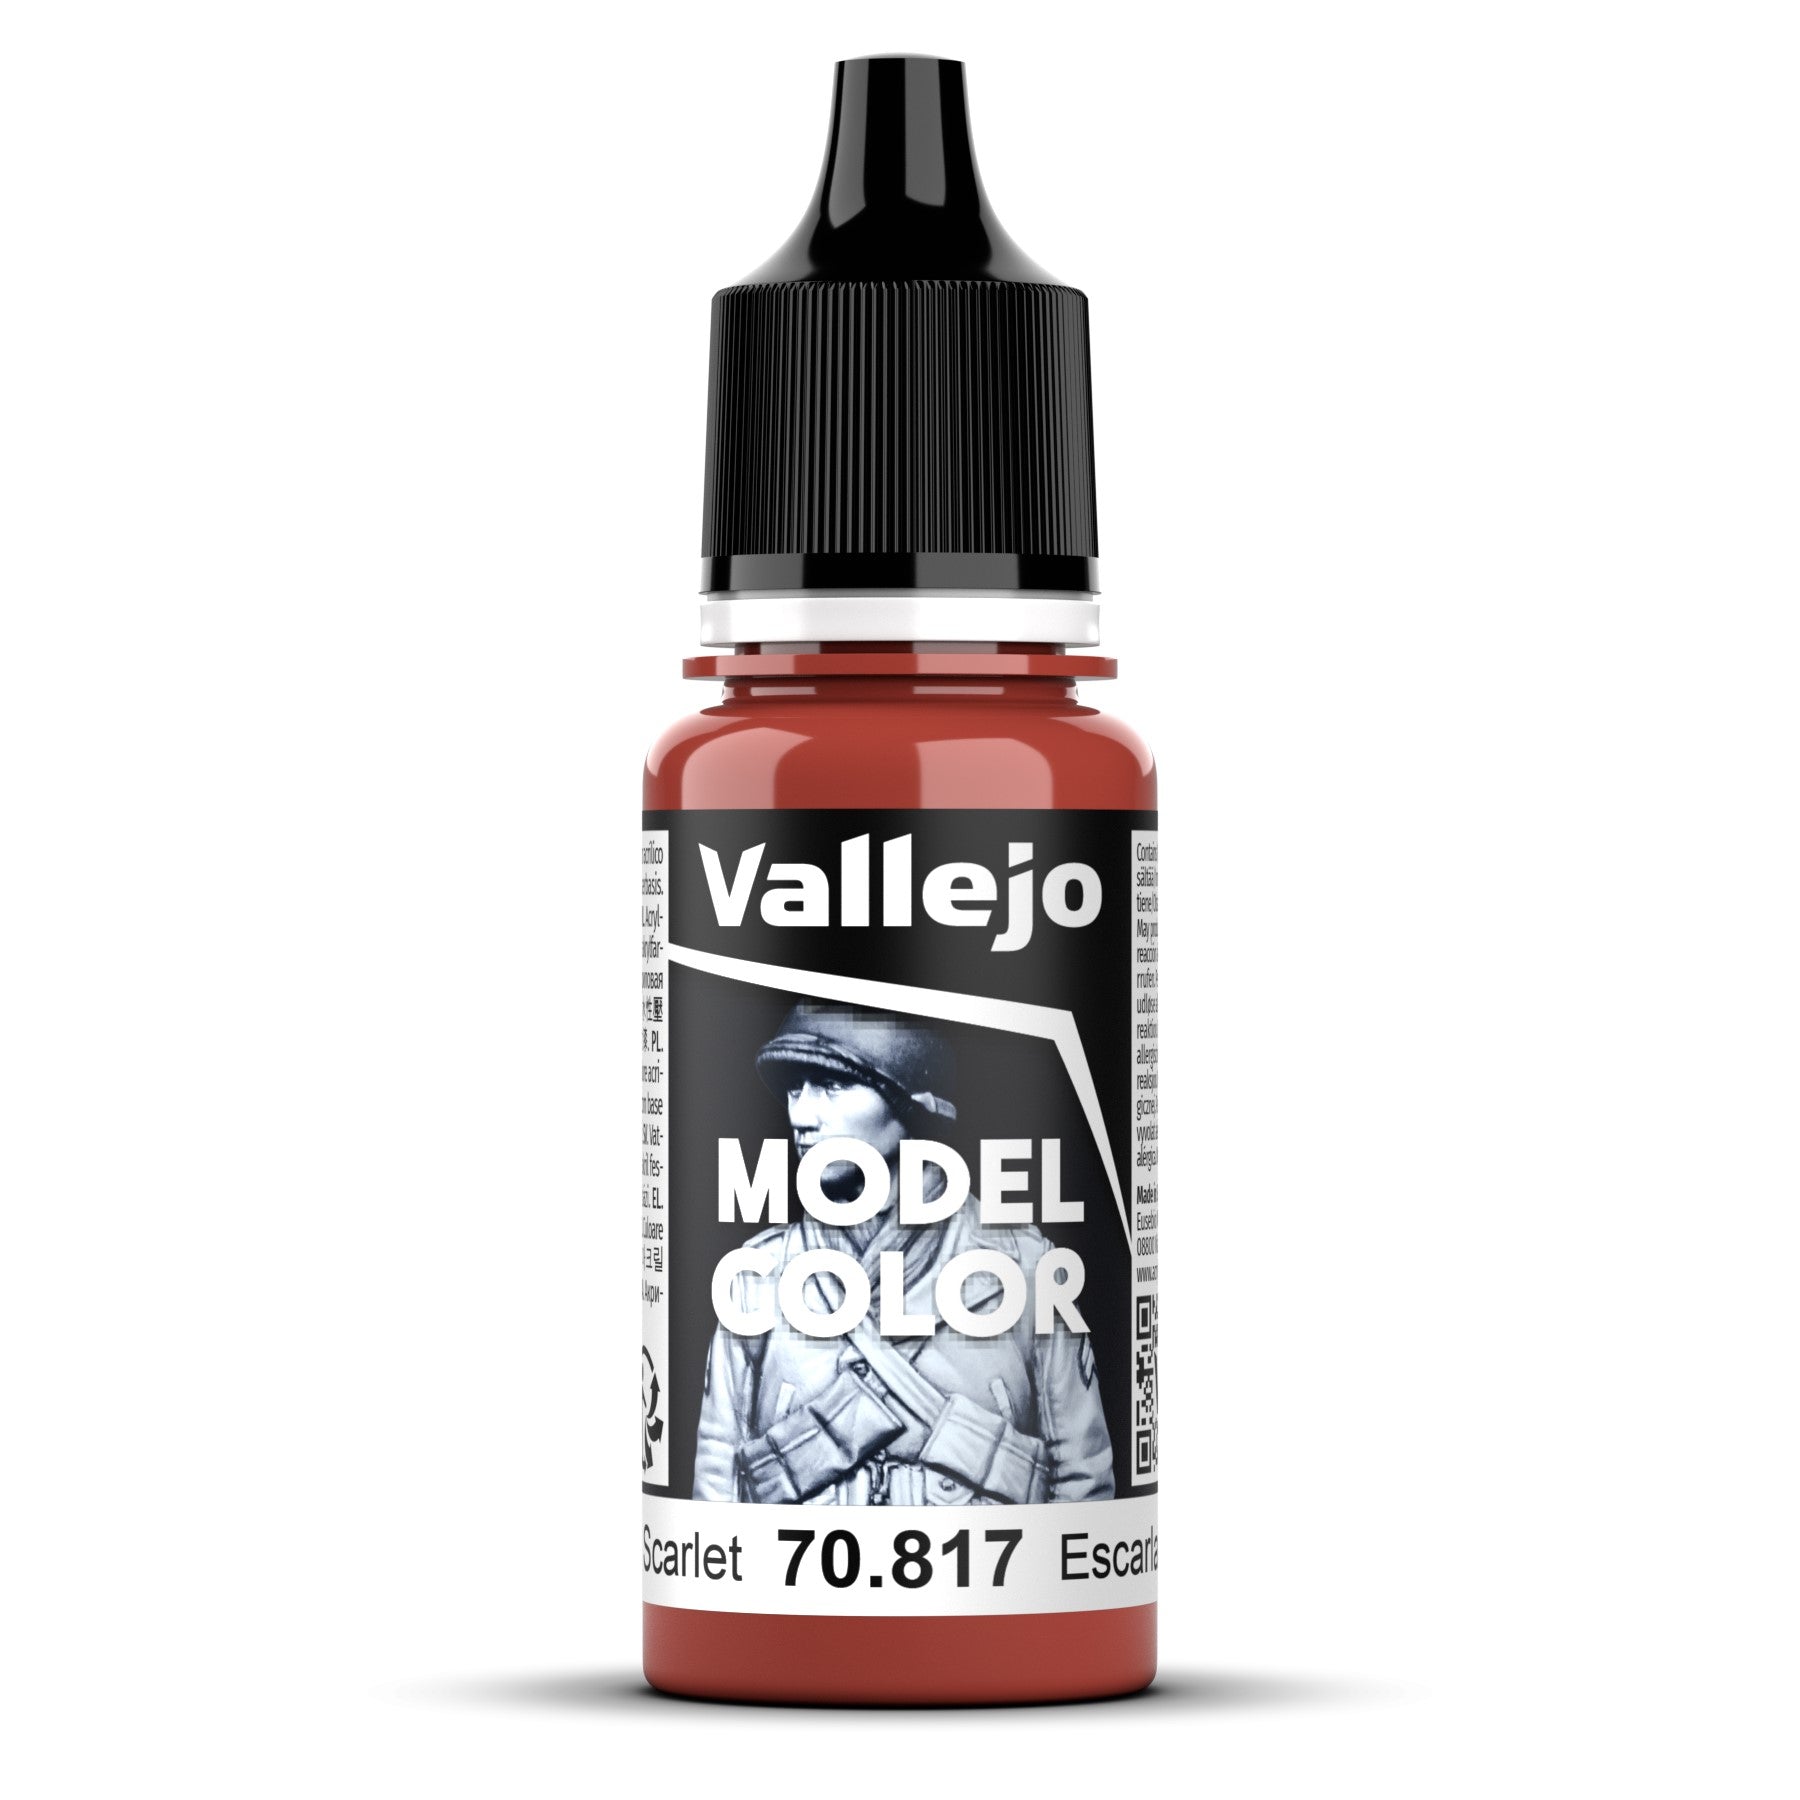 Vallejo Model Colour - Scarlet 18ml